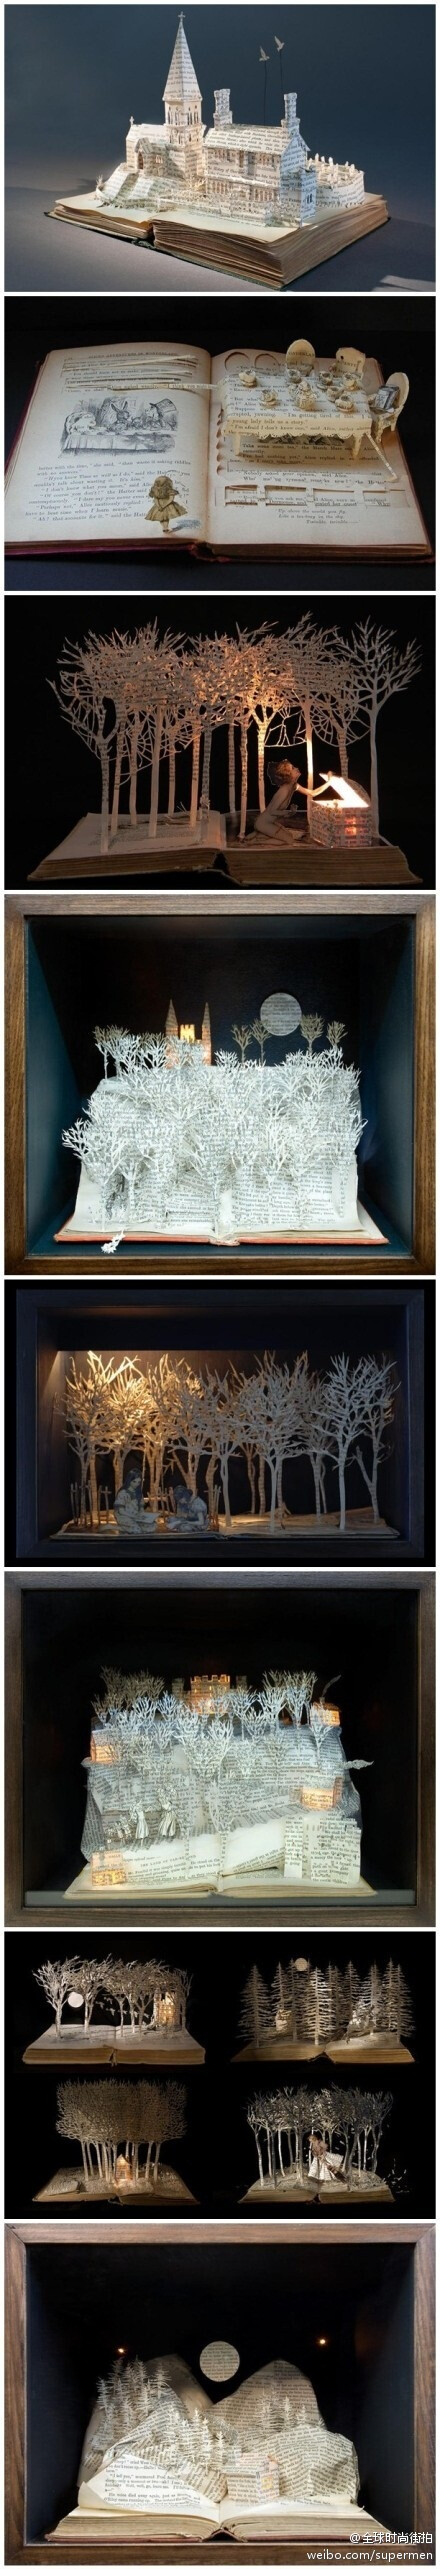 ざ 萌物搜罗 づ 英国女艺术家Su Blackwell用剪纸和折纸雕塑把一个个童年的幻想从书中带到了现实当中，非常唯美意境的效果。